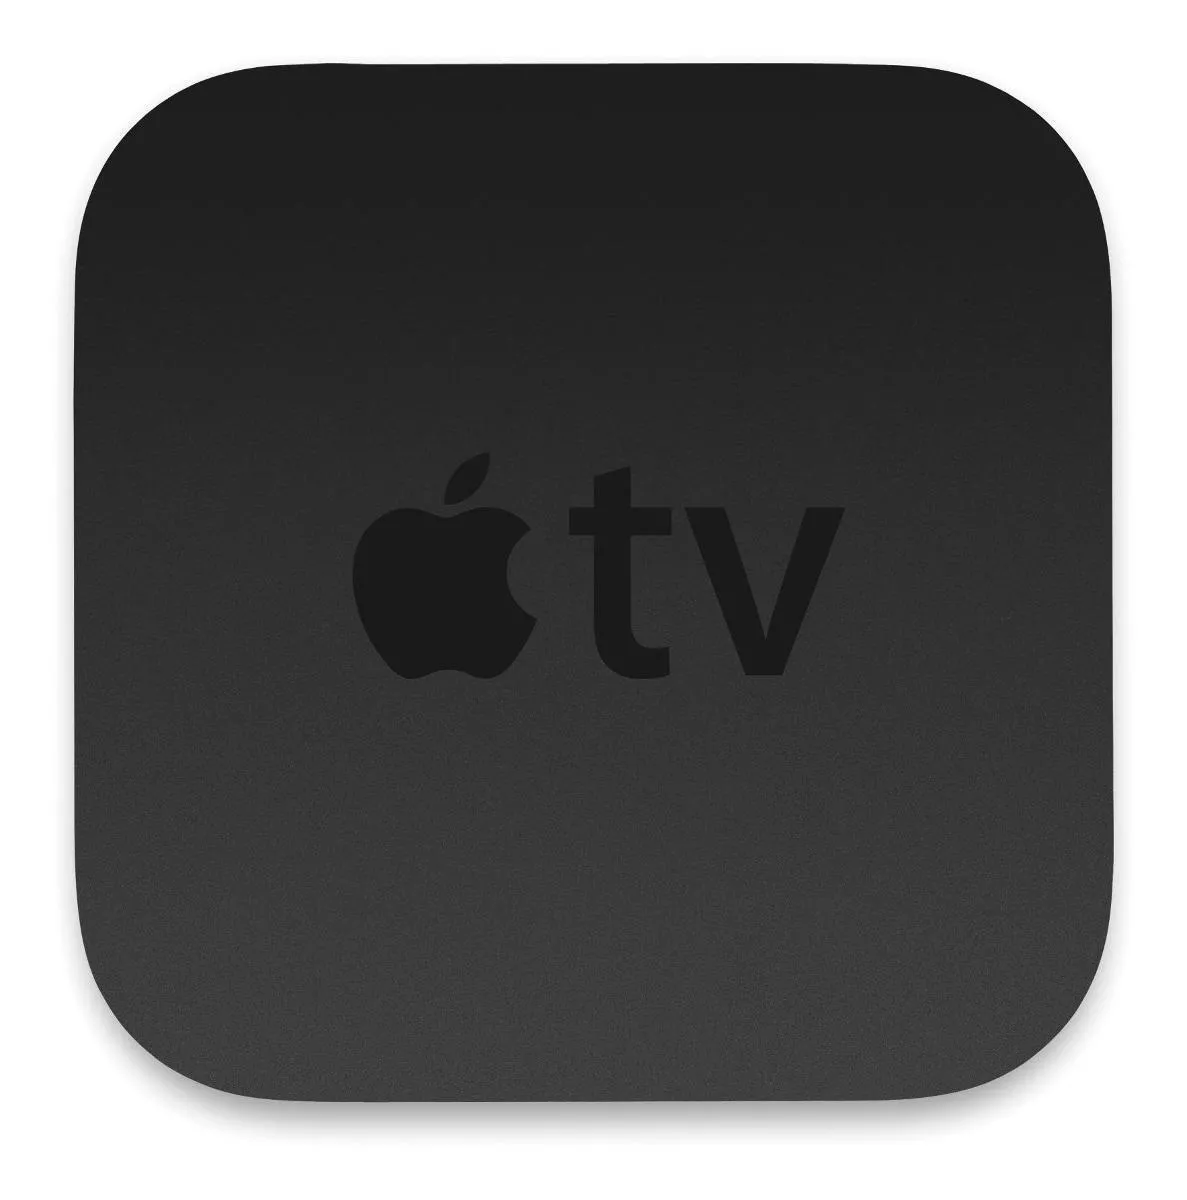  Apple Tv A1427 3.ª Generación Estándar Full Hd 8gb Negro Con 512mb De Memoria Ram